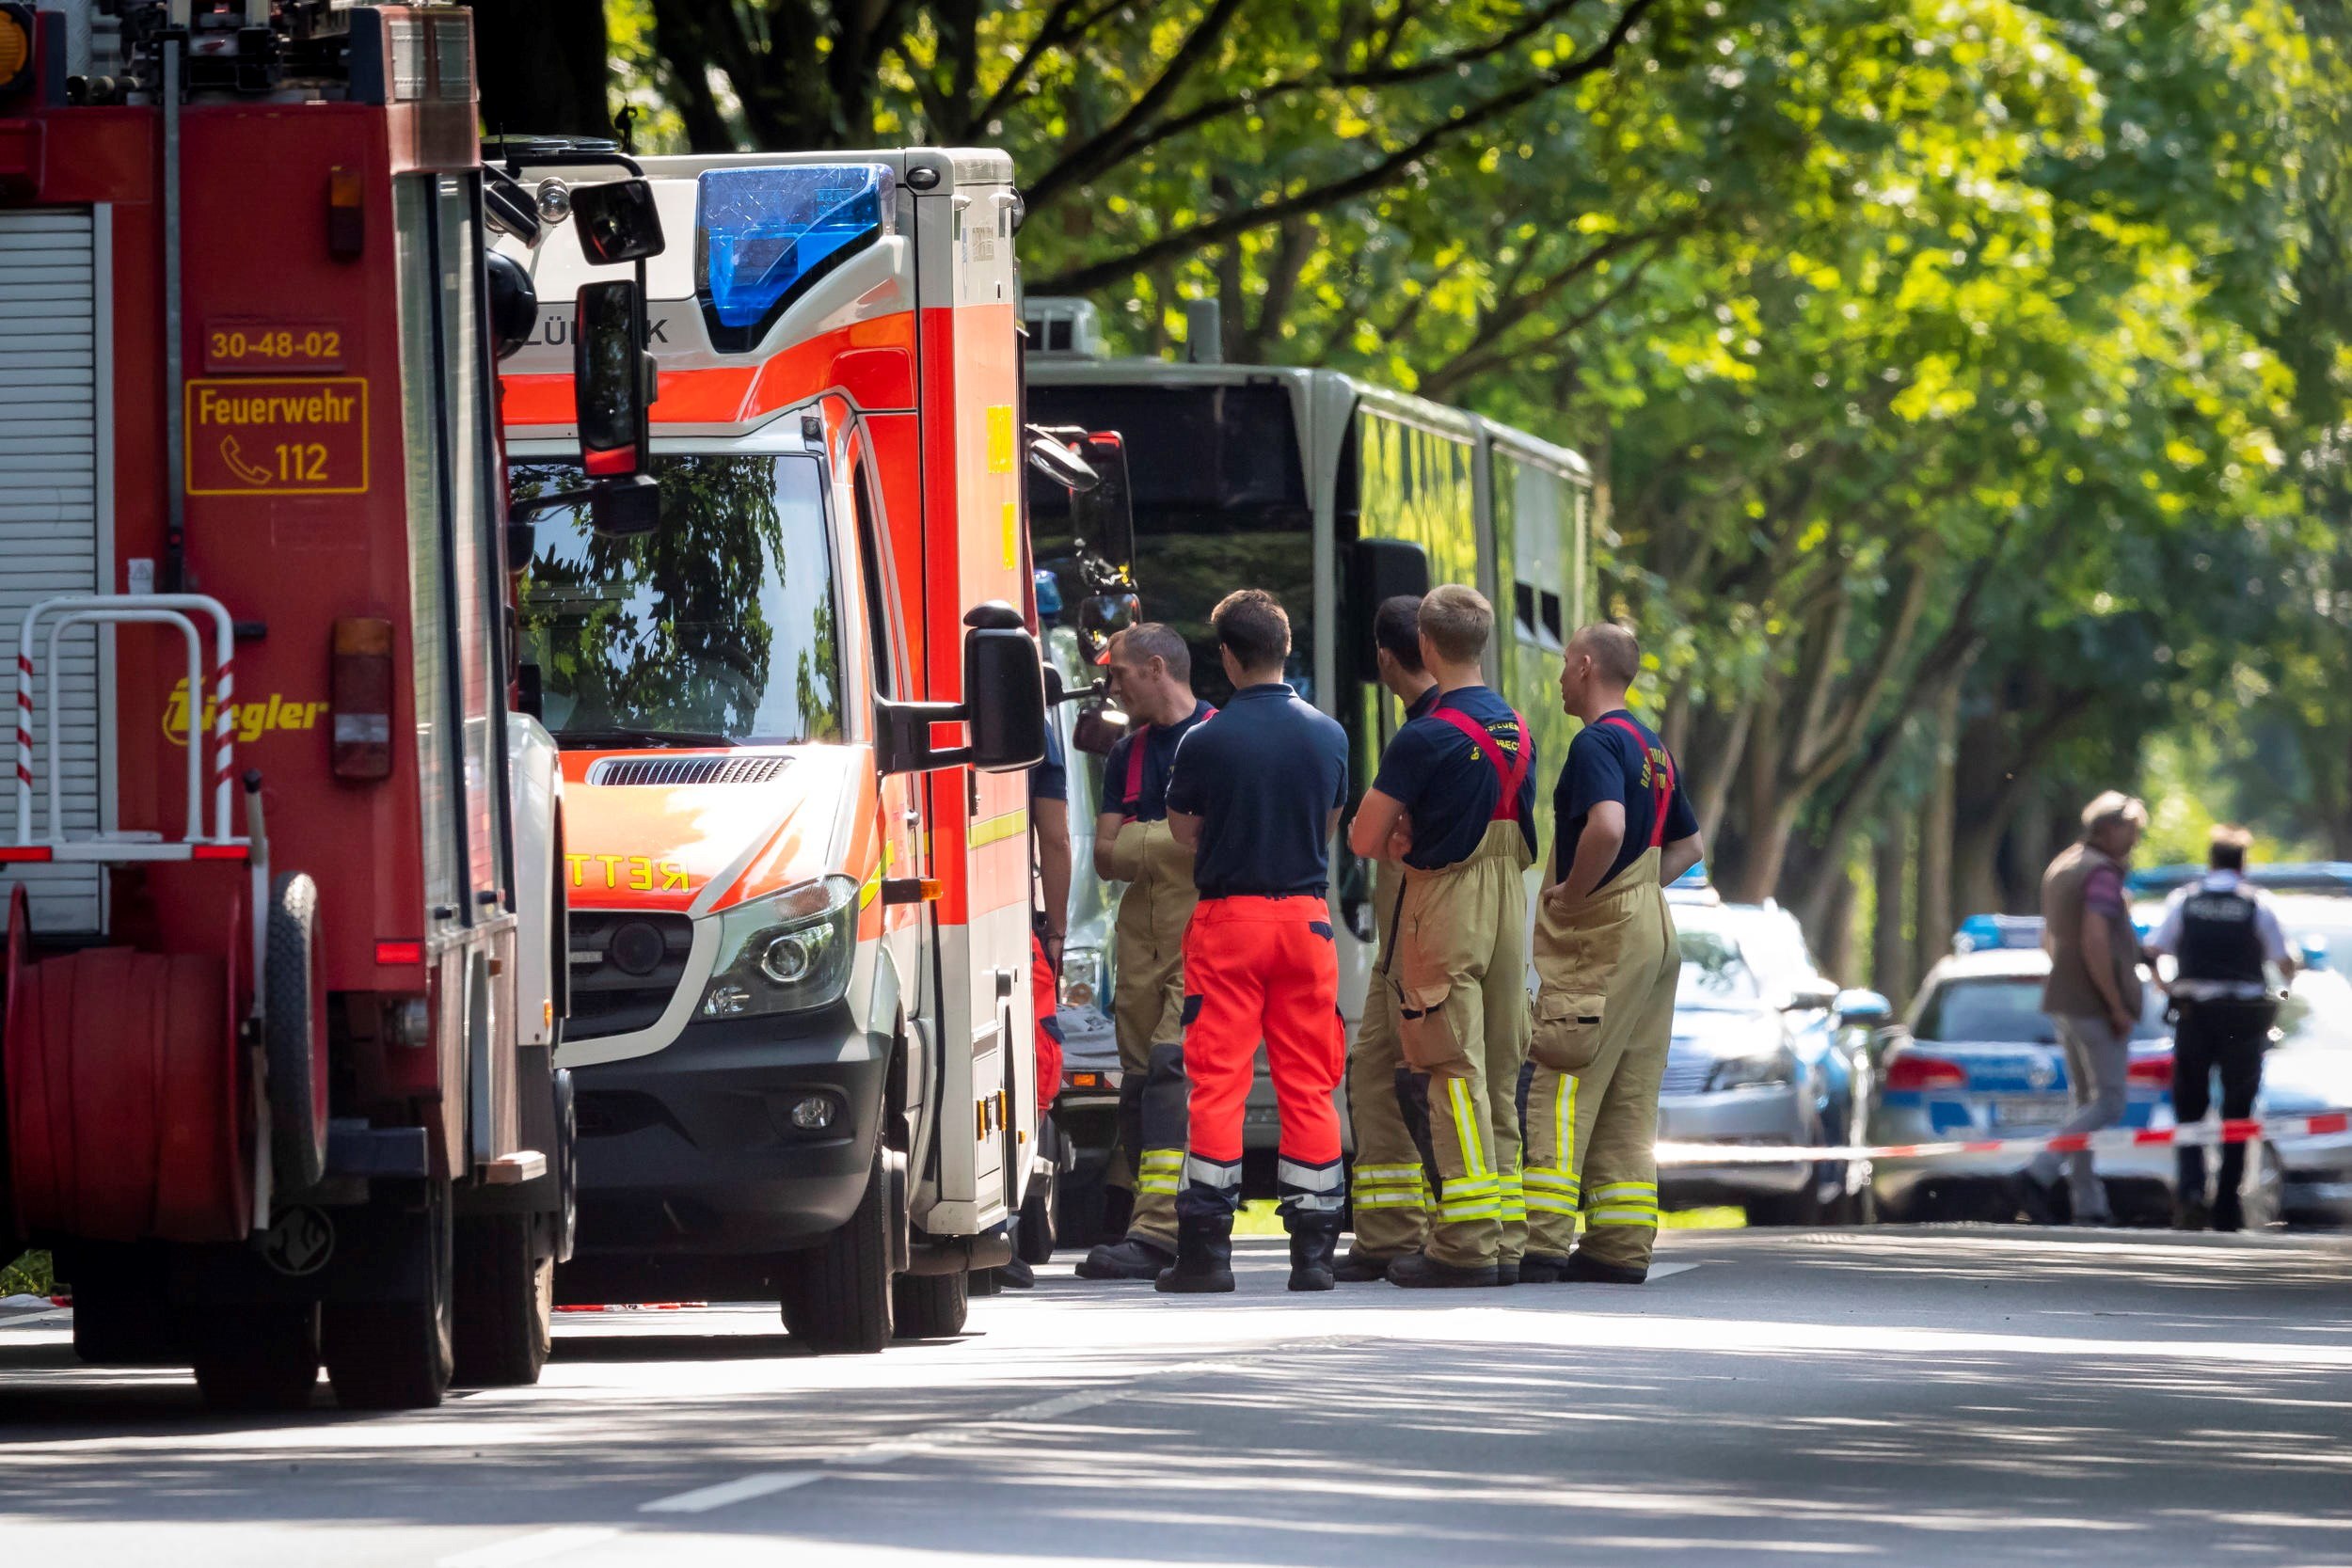 EPA4197. LÜBECK (ALEMANIA), 20/07/2018.- Efectivos de equipos de emergencia trabajan en el lugar donde doce personas resultaron heridas, dos de ellas de gravedad, en un ataque cometido por un hombre armado con un cuchillo en un autobús urbano, en la ciudad alemana de Lübeck, el 20 de julio del 2018. EFE/Felix Koenig